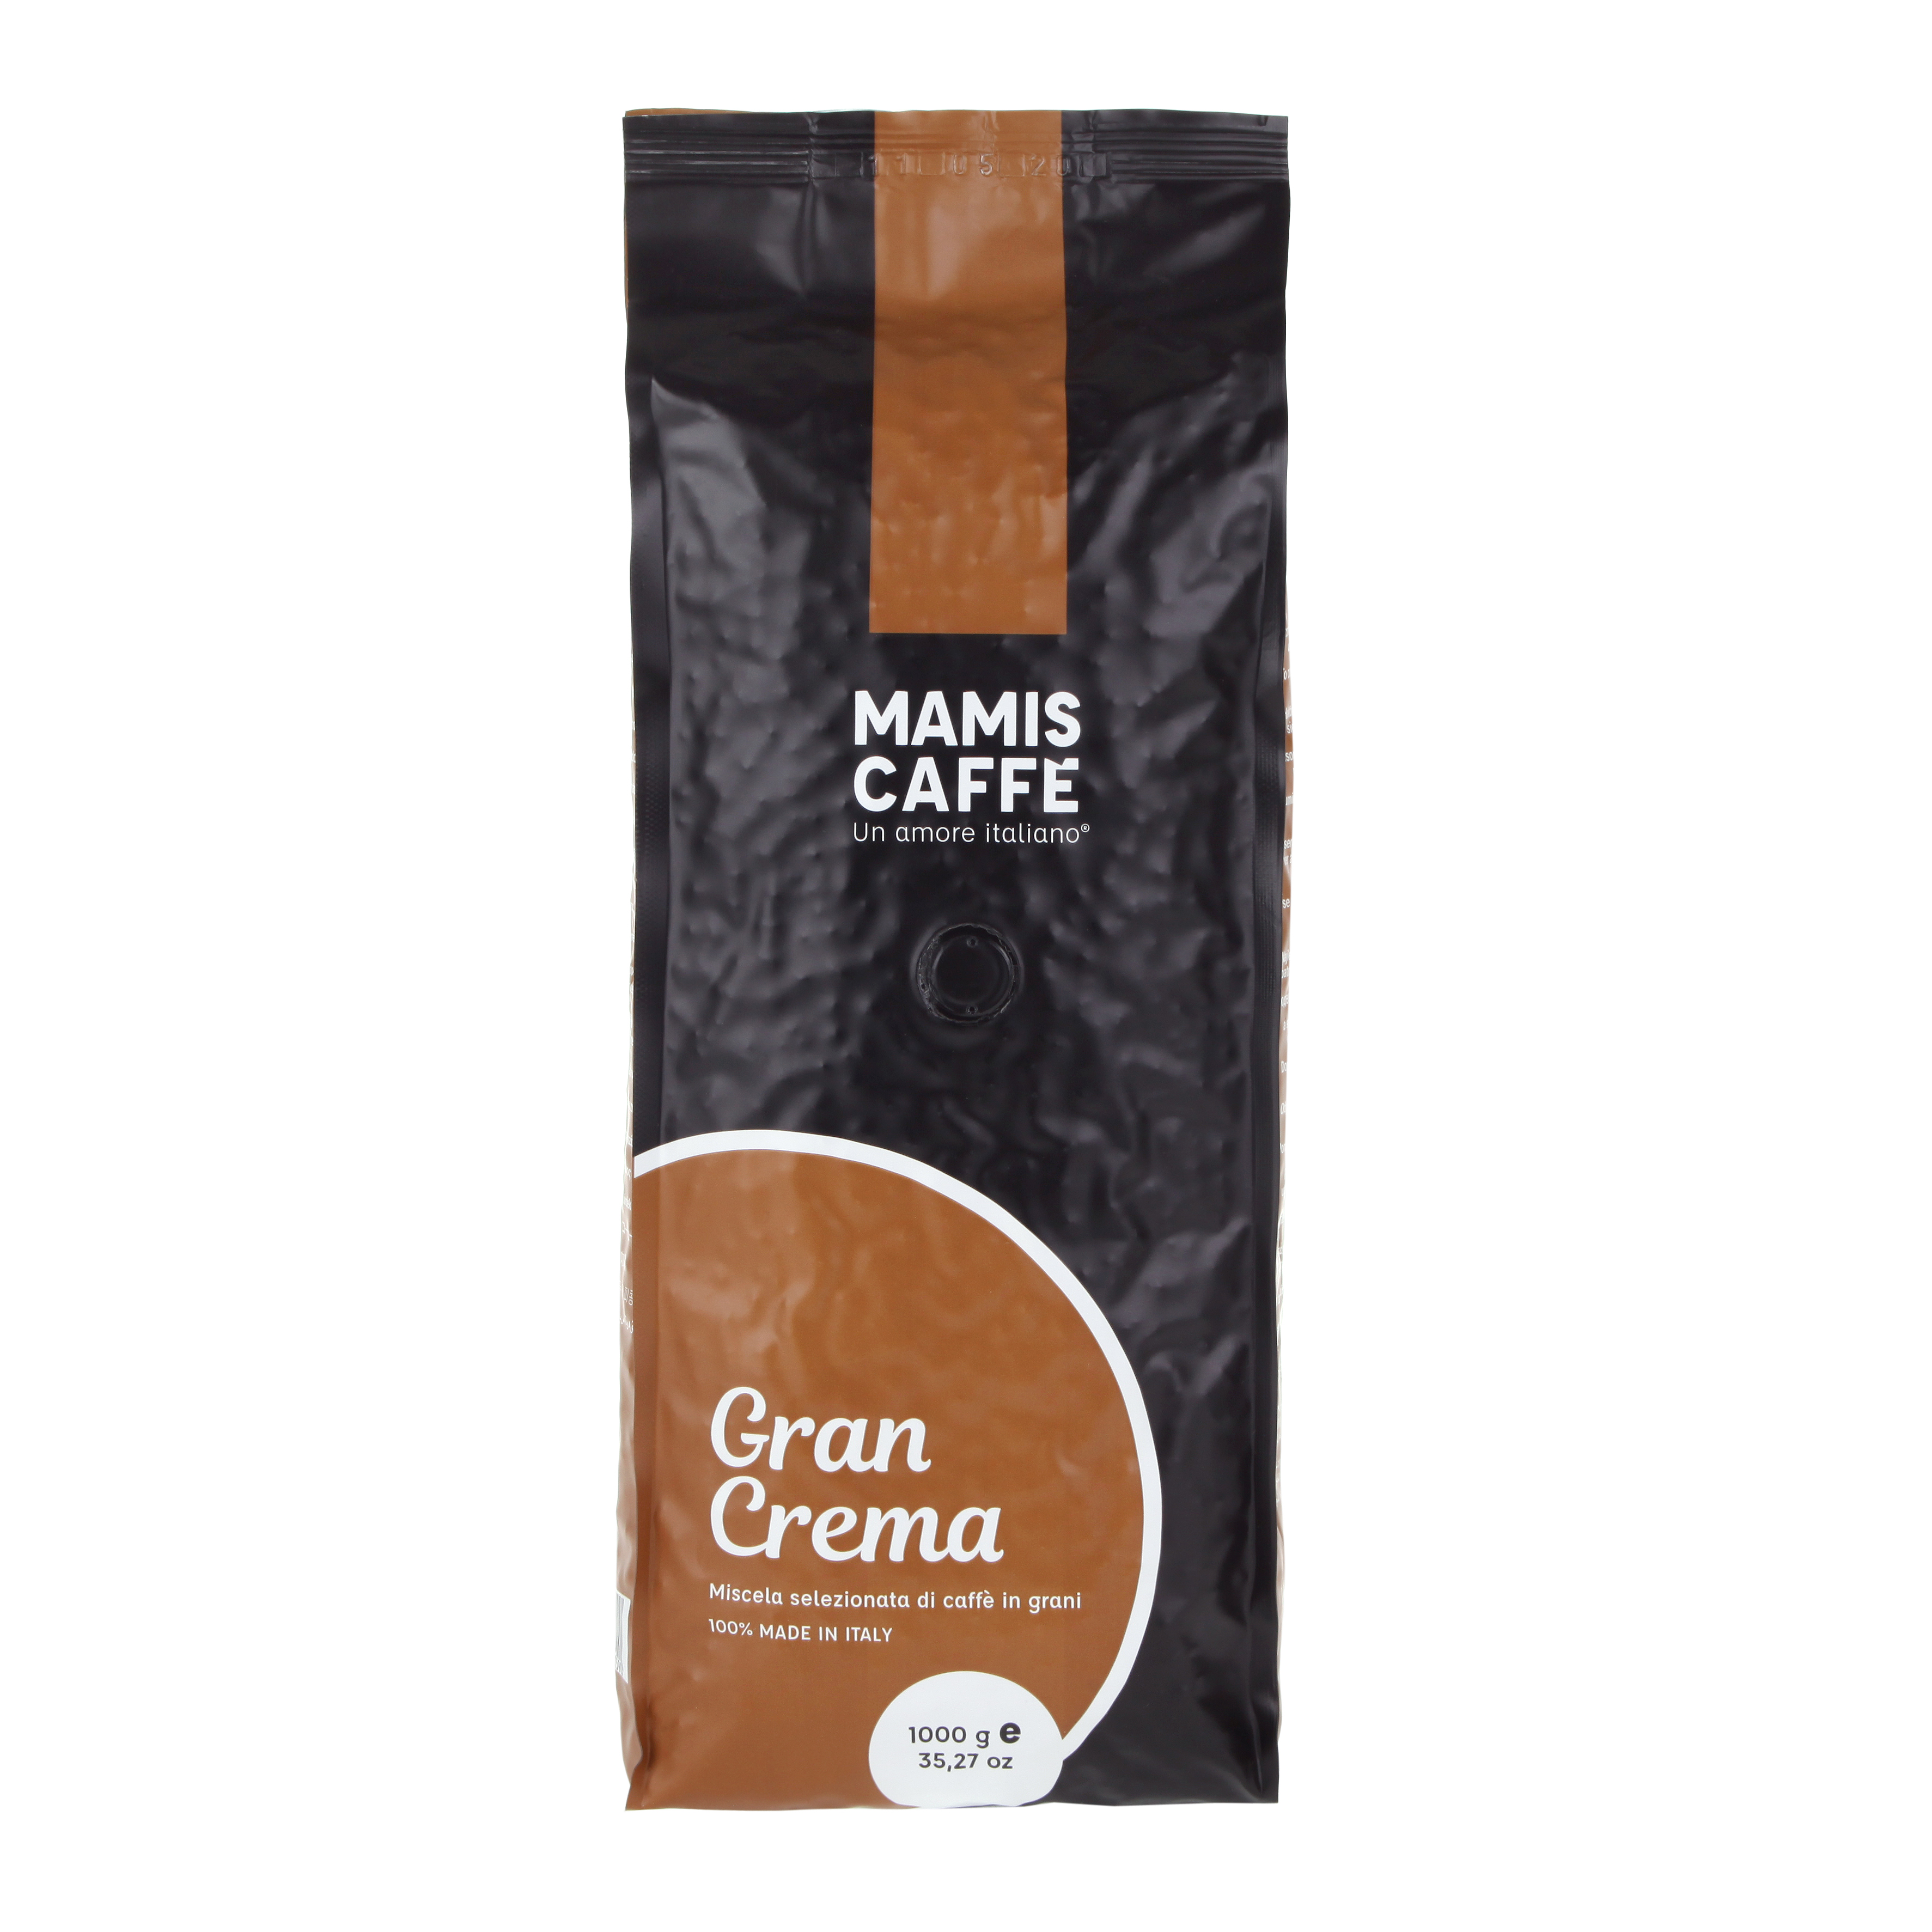 Mamis Caffè Gran Crema